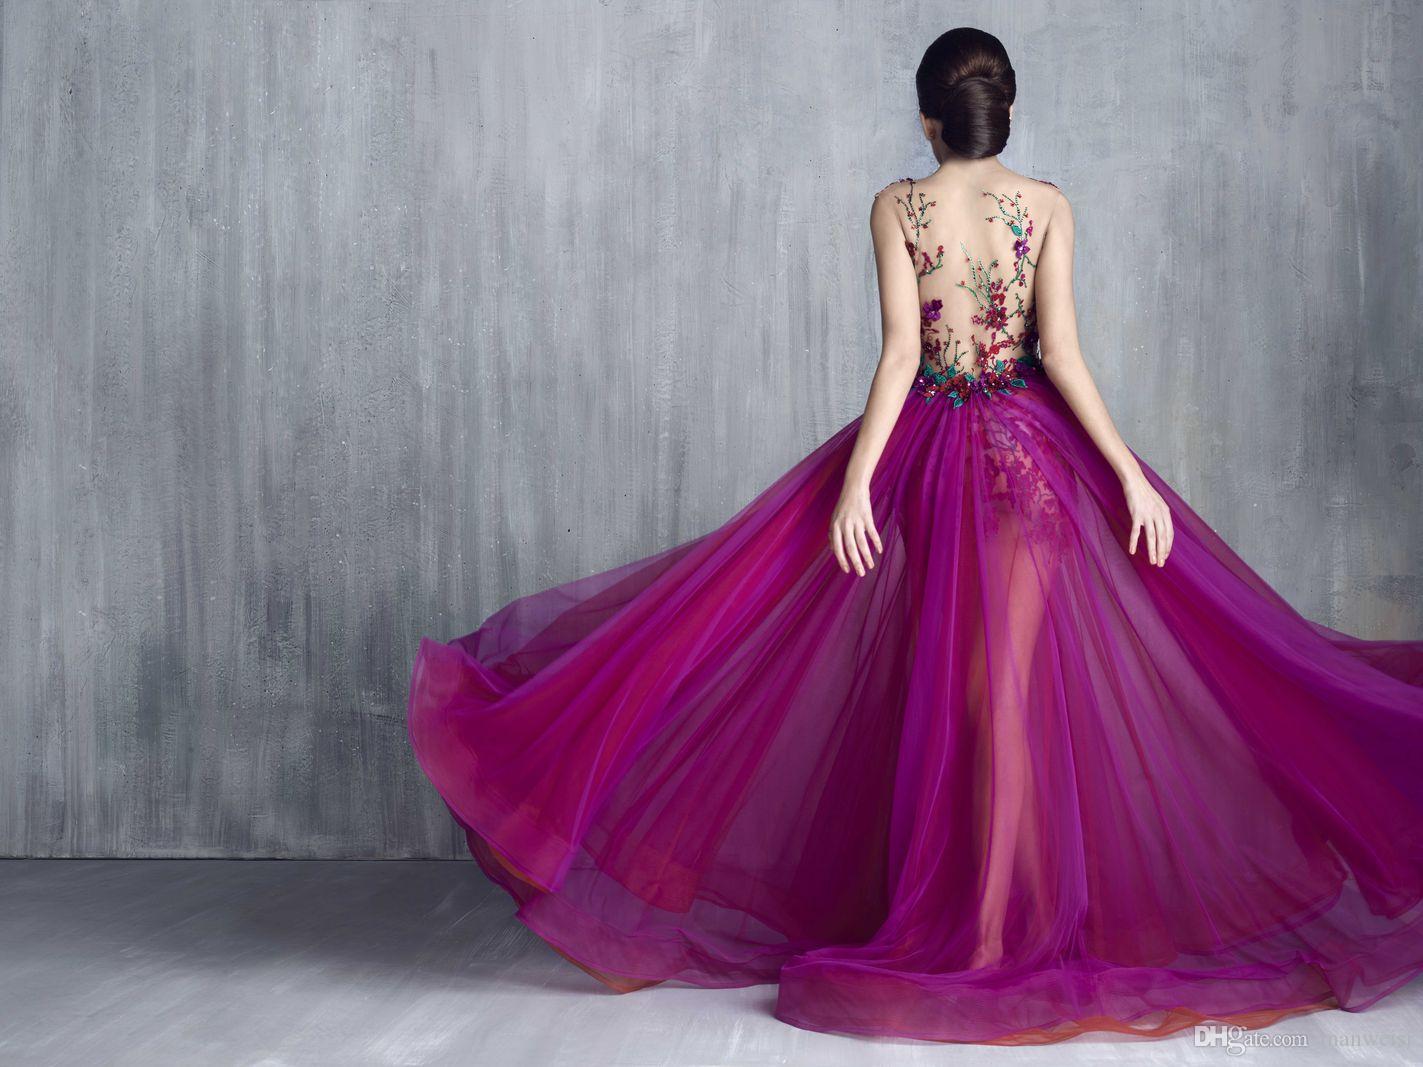 Pick Rainbow of Prom Dresses & I'll Guess Generation & … Quiz purple prom dress